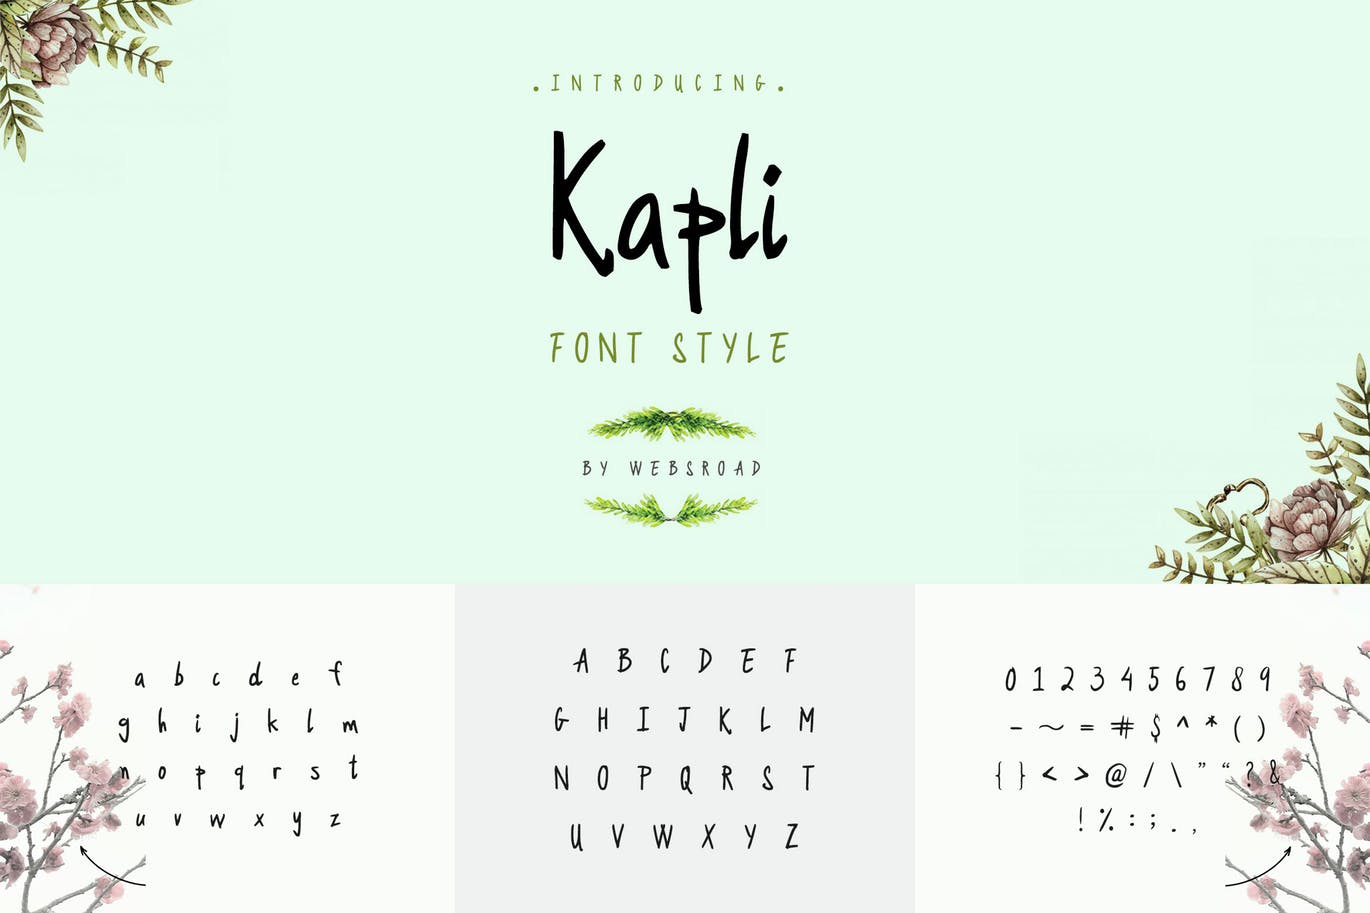 现代柔和英文手写字体下载 Kapli – Custom Handmade Font Style插图